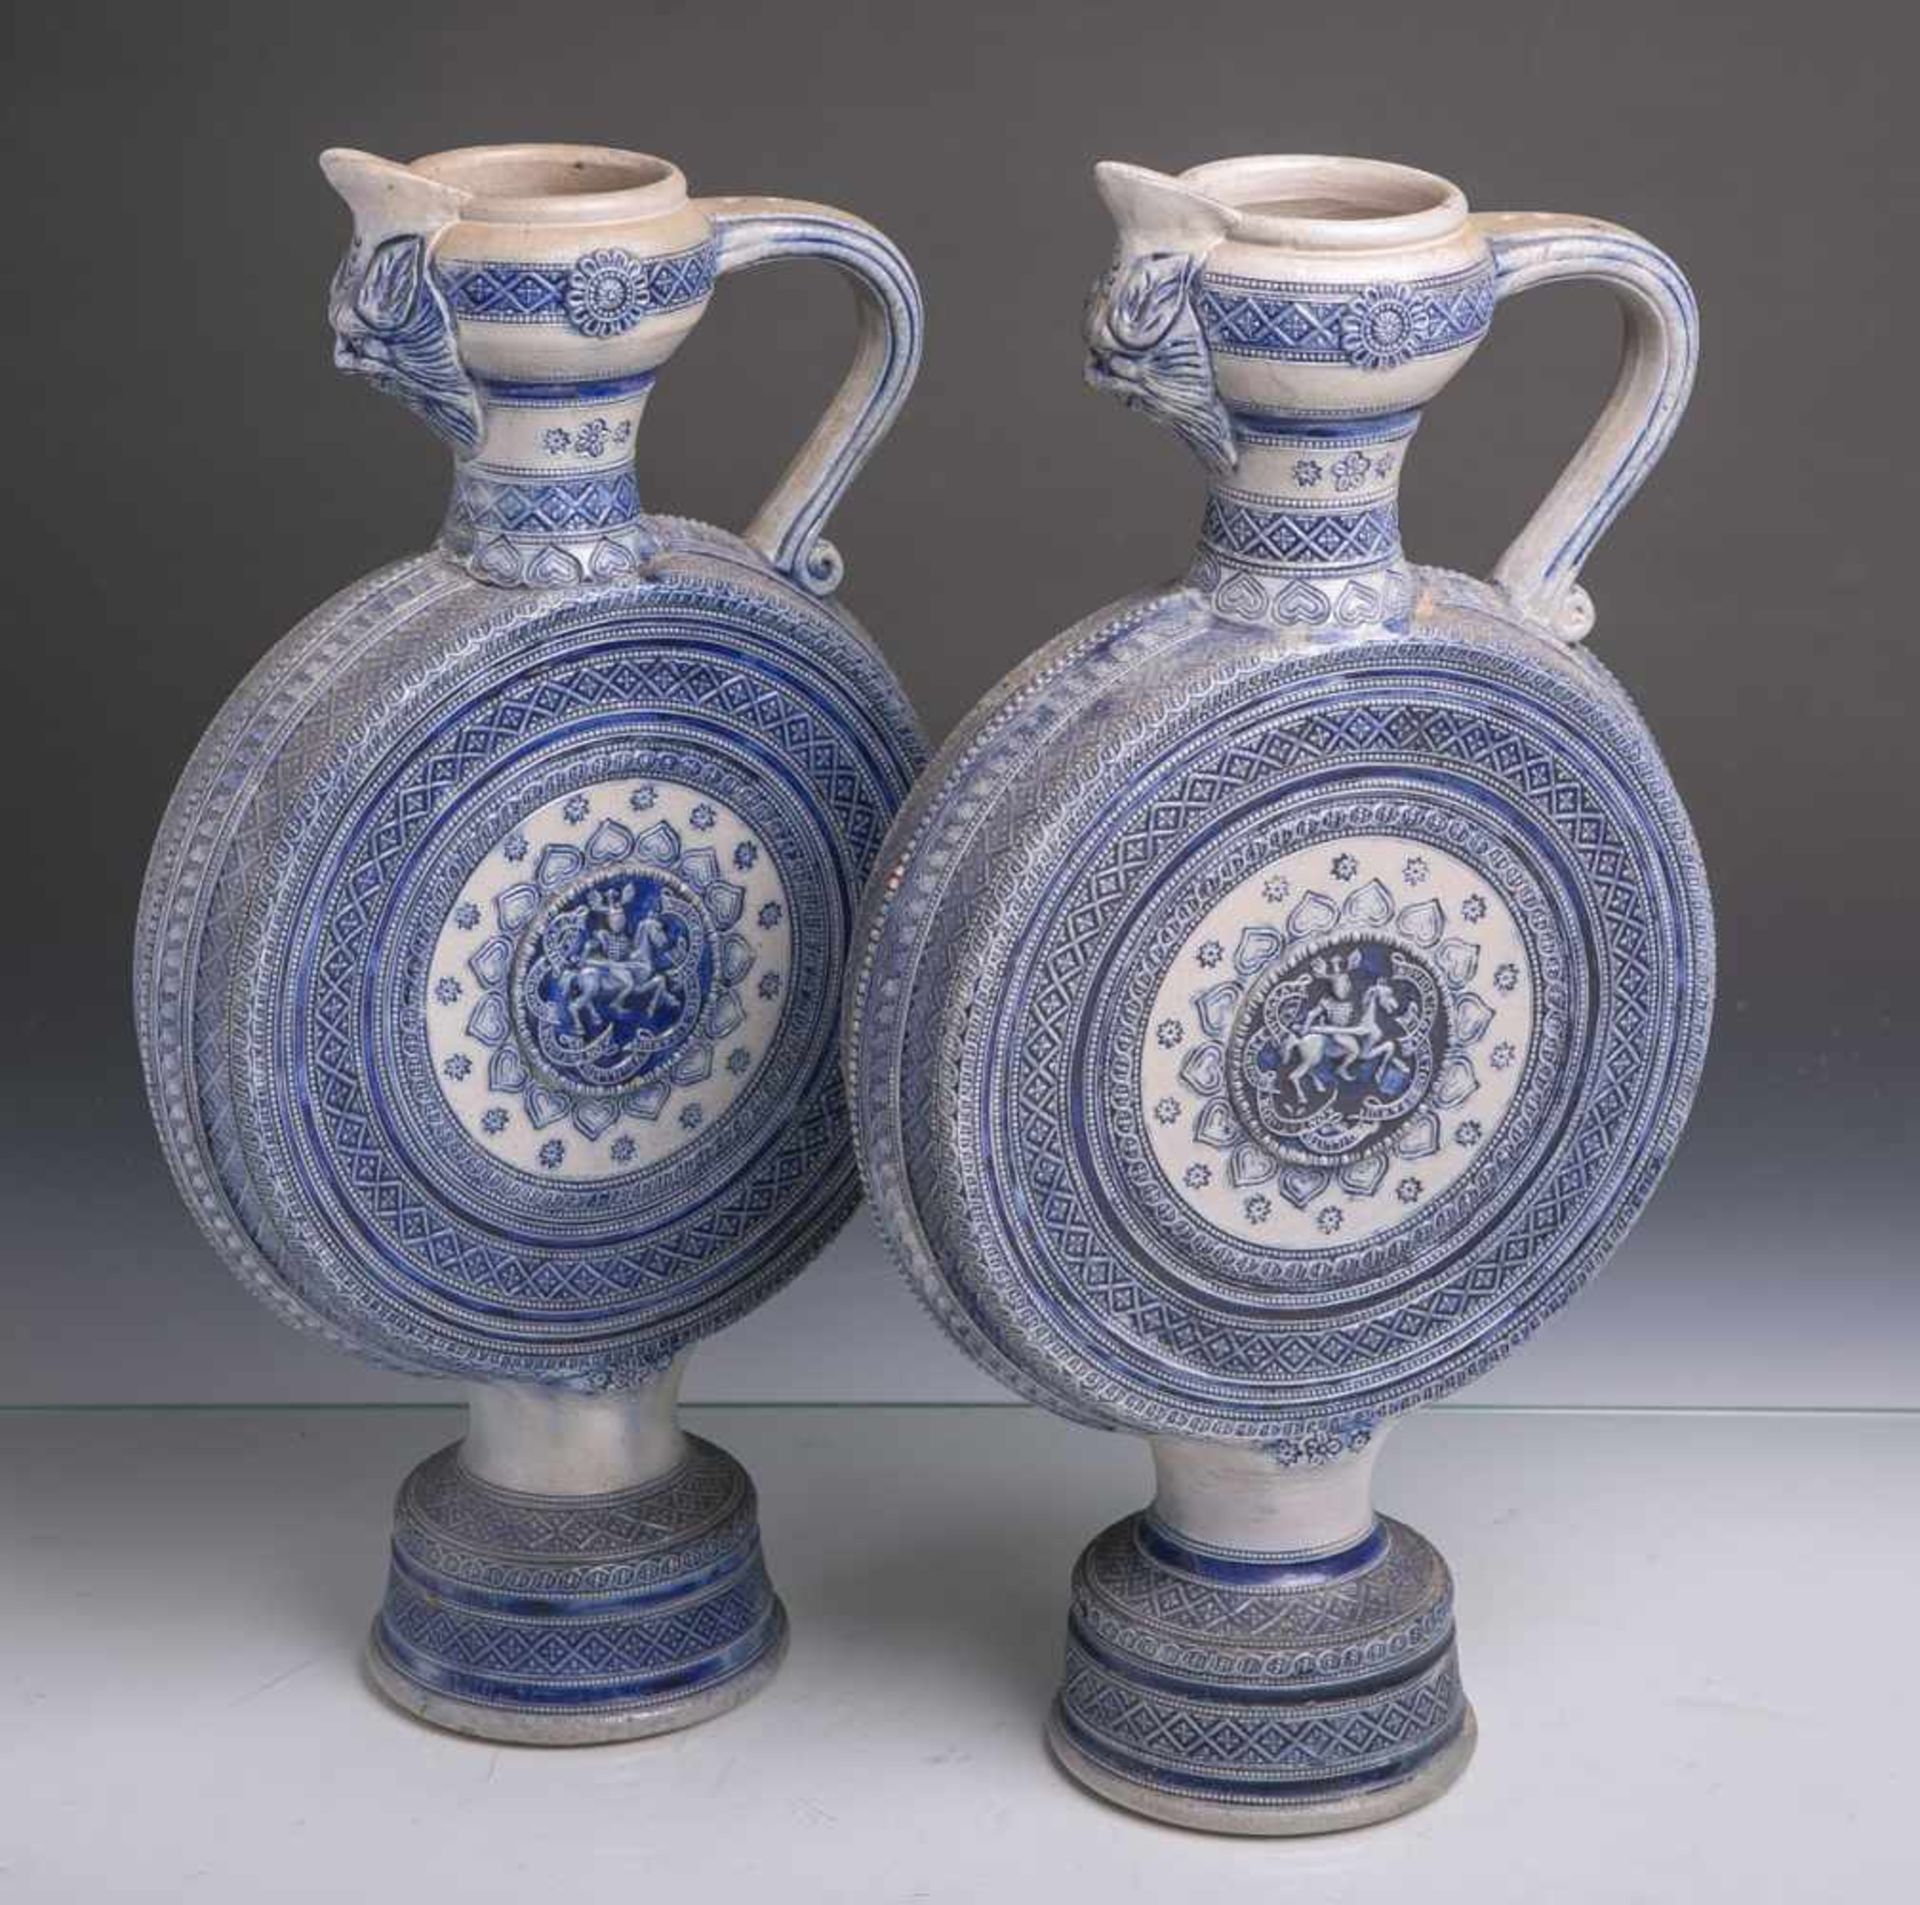 Paar Flachkannen aus grauem Steinzeug mit blauer Bemalung, Historismus um 1880/1900, Höheca.